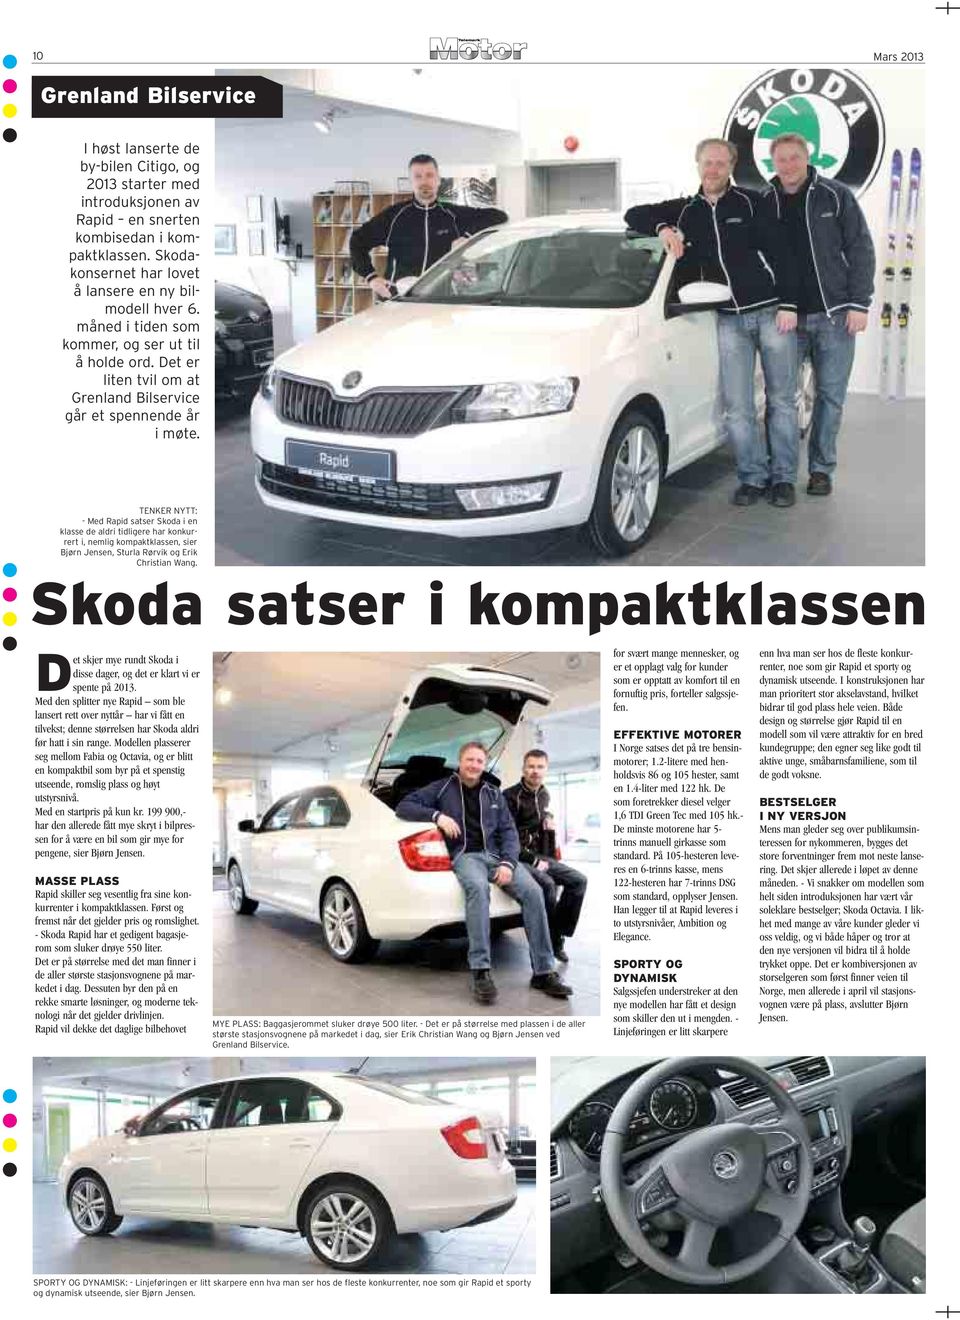 TENKER NYTT: - Med Rapid satser Skoda i en klasse de aldri tidligere har konkurrert i, nemlig kompaktklassen, sier Bjørn Jensen, Sturla Rørvik og Erik Christian Wang.